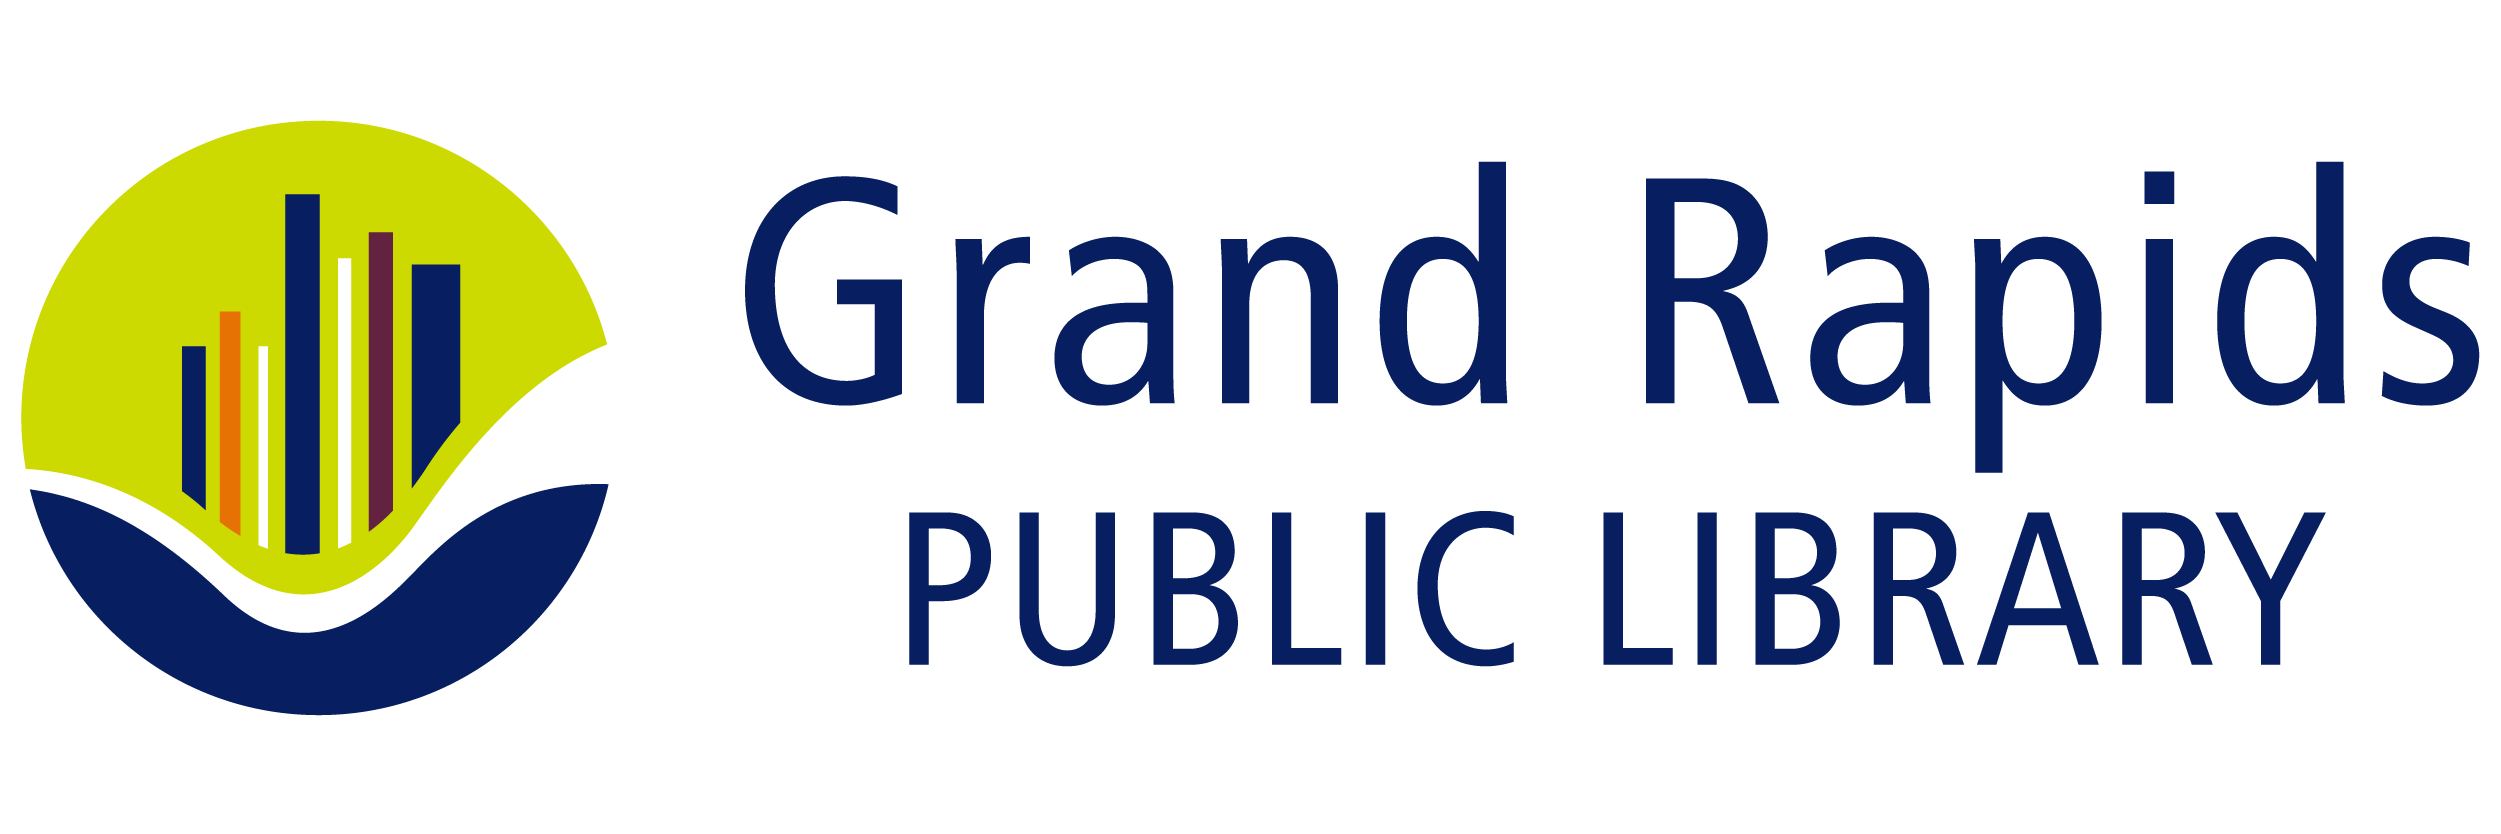 Grand Rapids Public Library logo